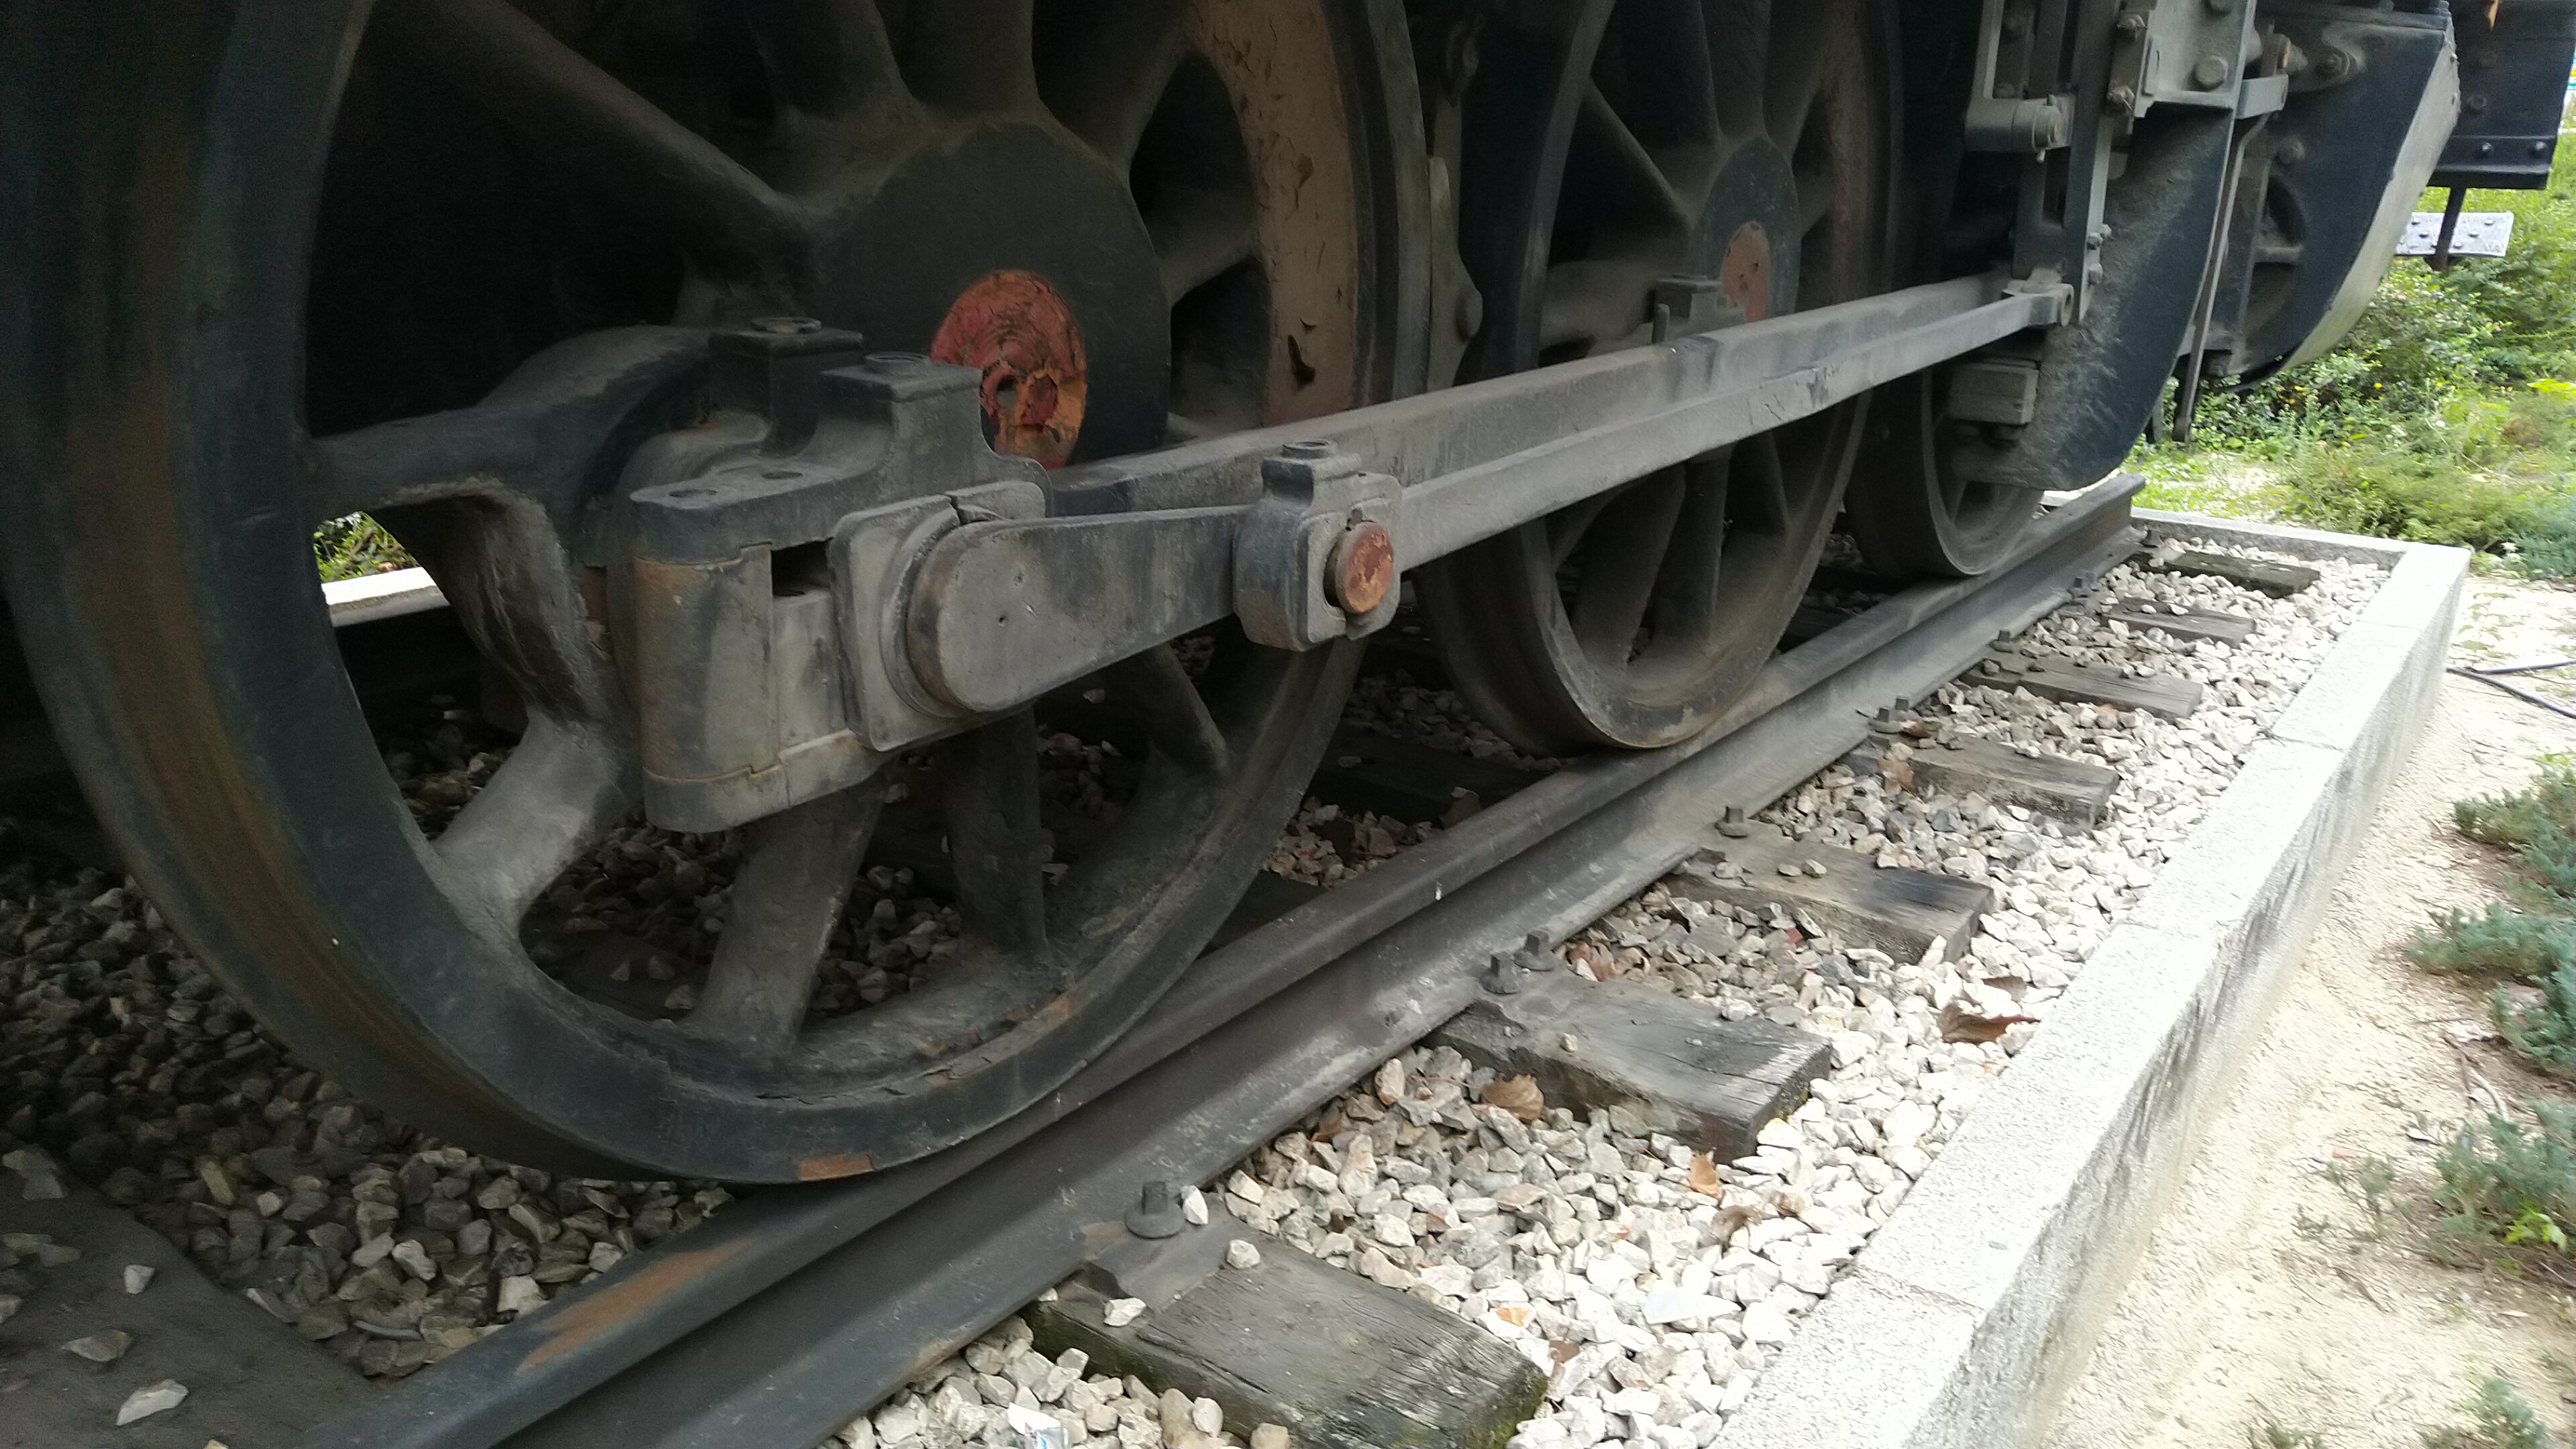 ¿Cuál es el nombre de lo que hay debajo del tren?